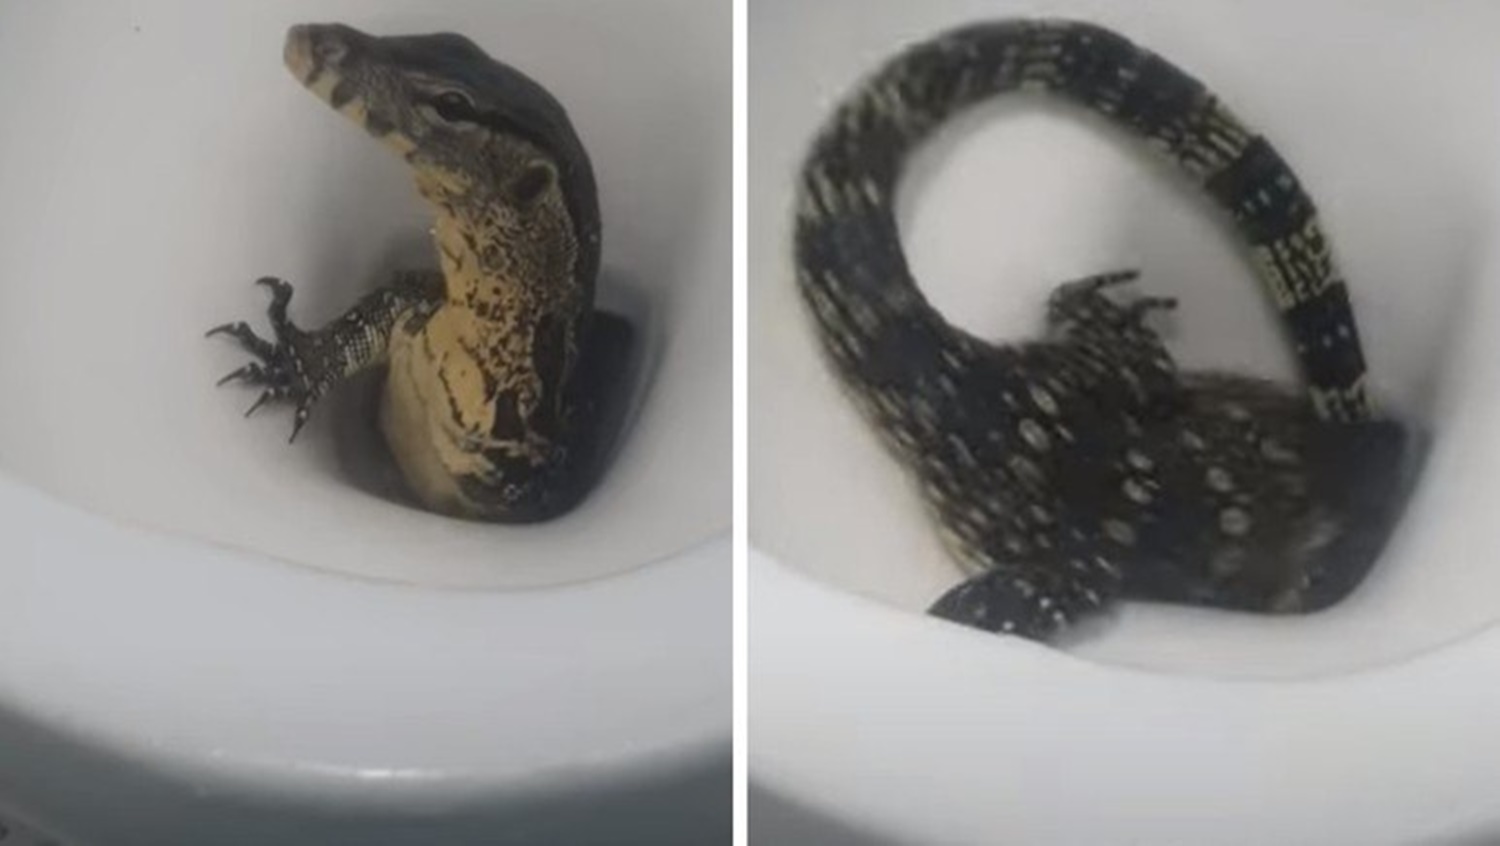 SUSTO: Homem flagra lagarto saindo do vaso sanitário em quarto de hotel